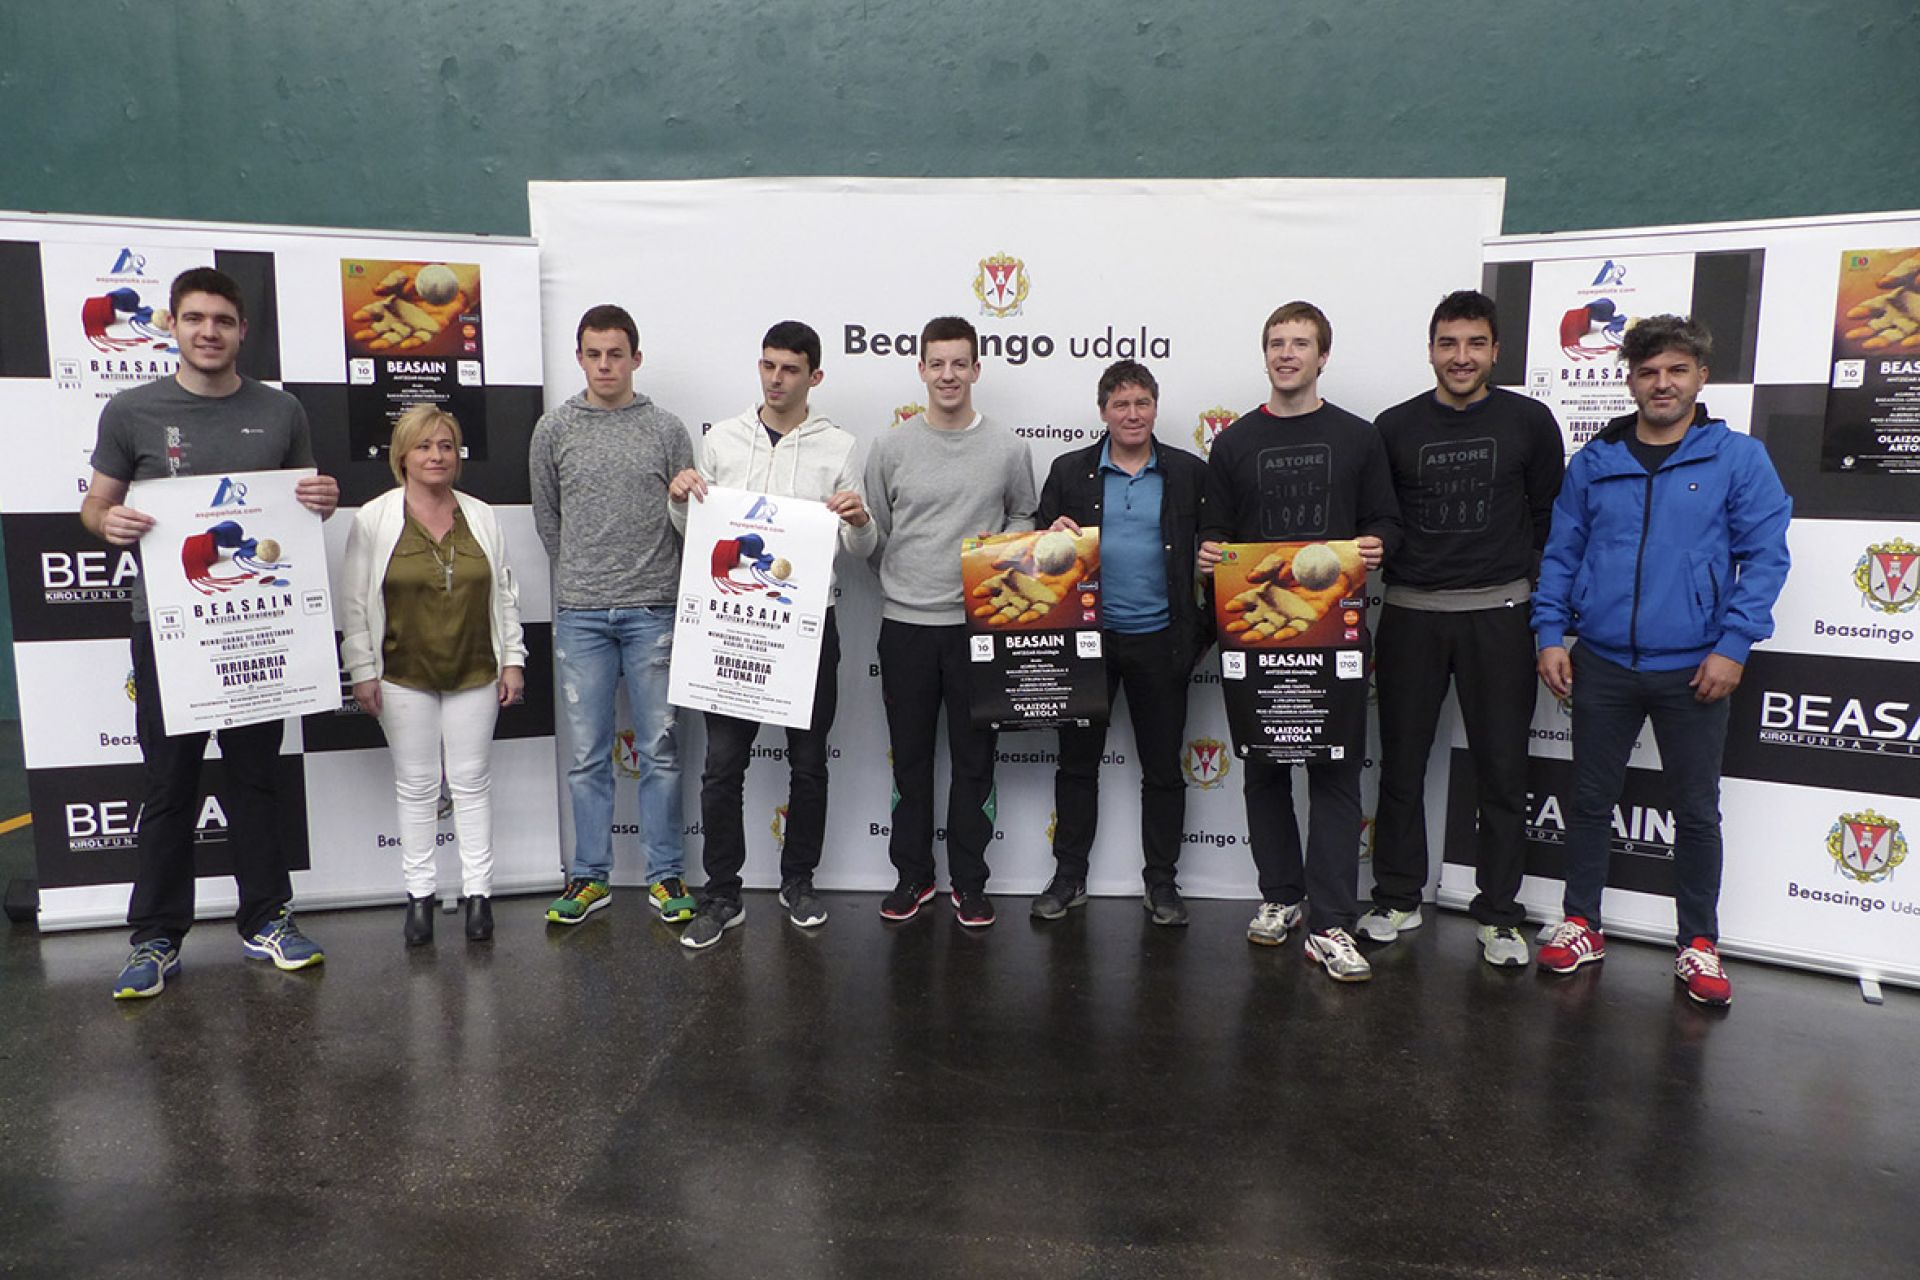 Beasain acogerá eliminatorias del torneo del cuatro y medio de San Fermín